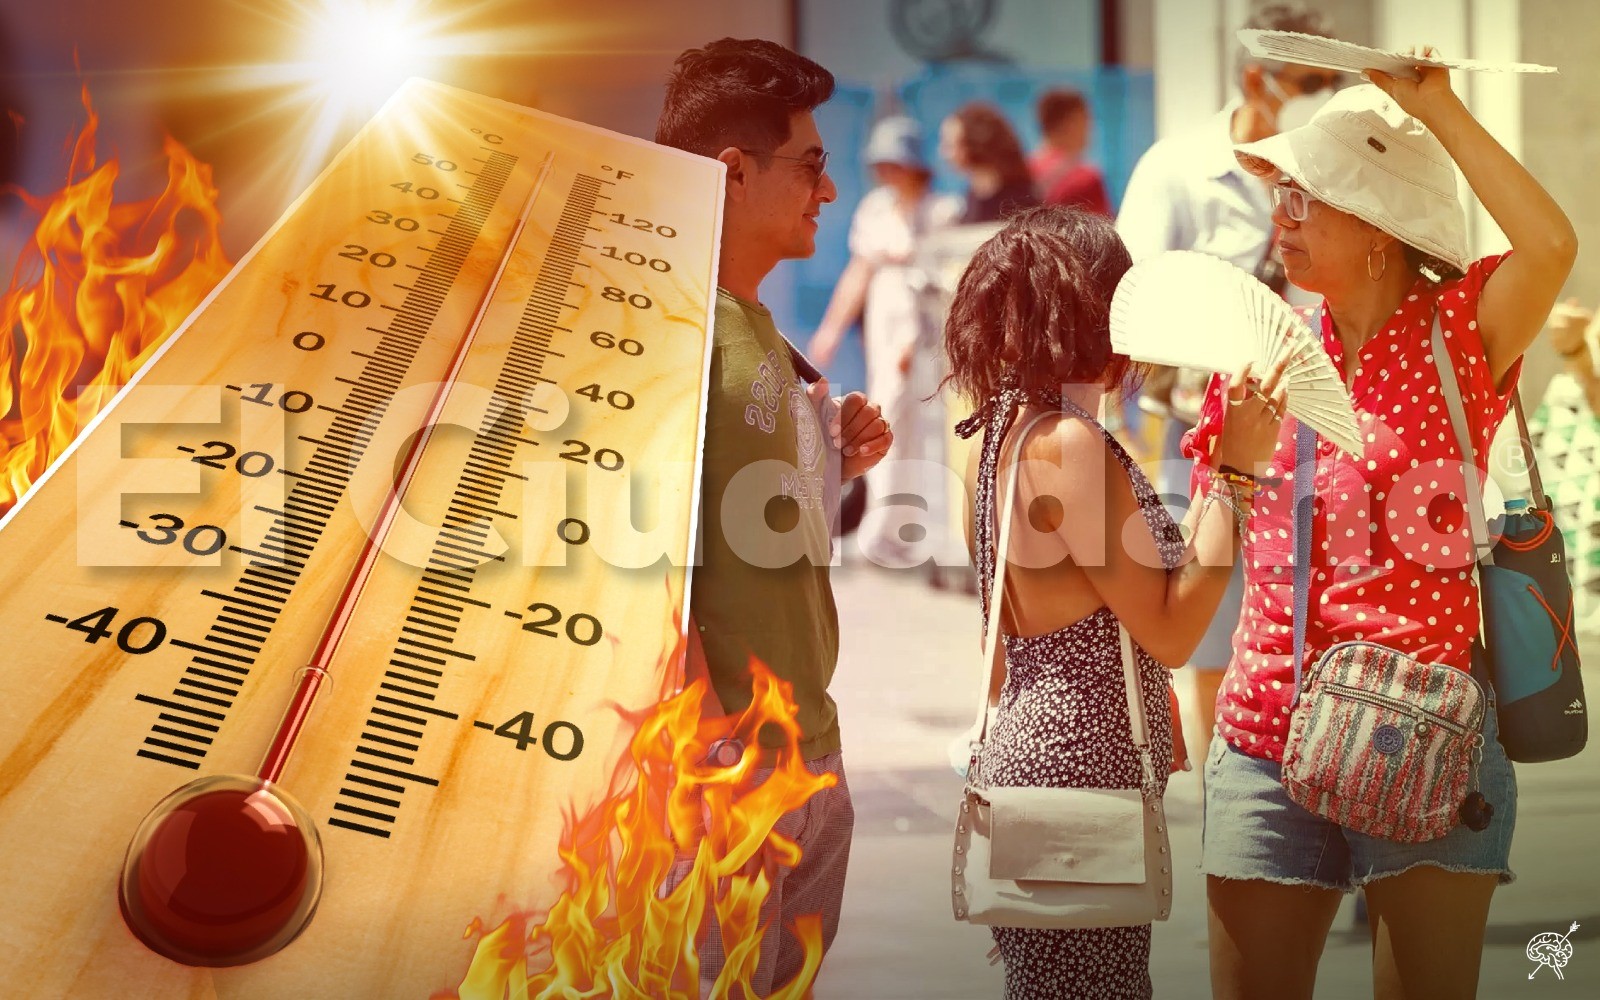 Calor en Puebla aumenta ingresos de paleterías en 200%